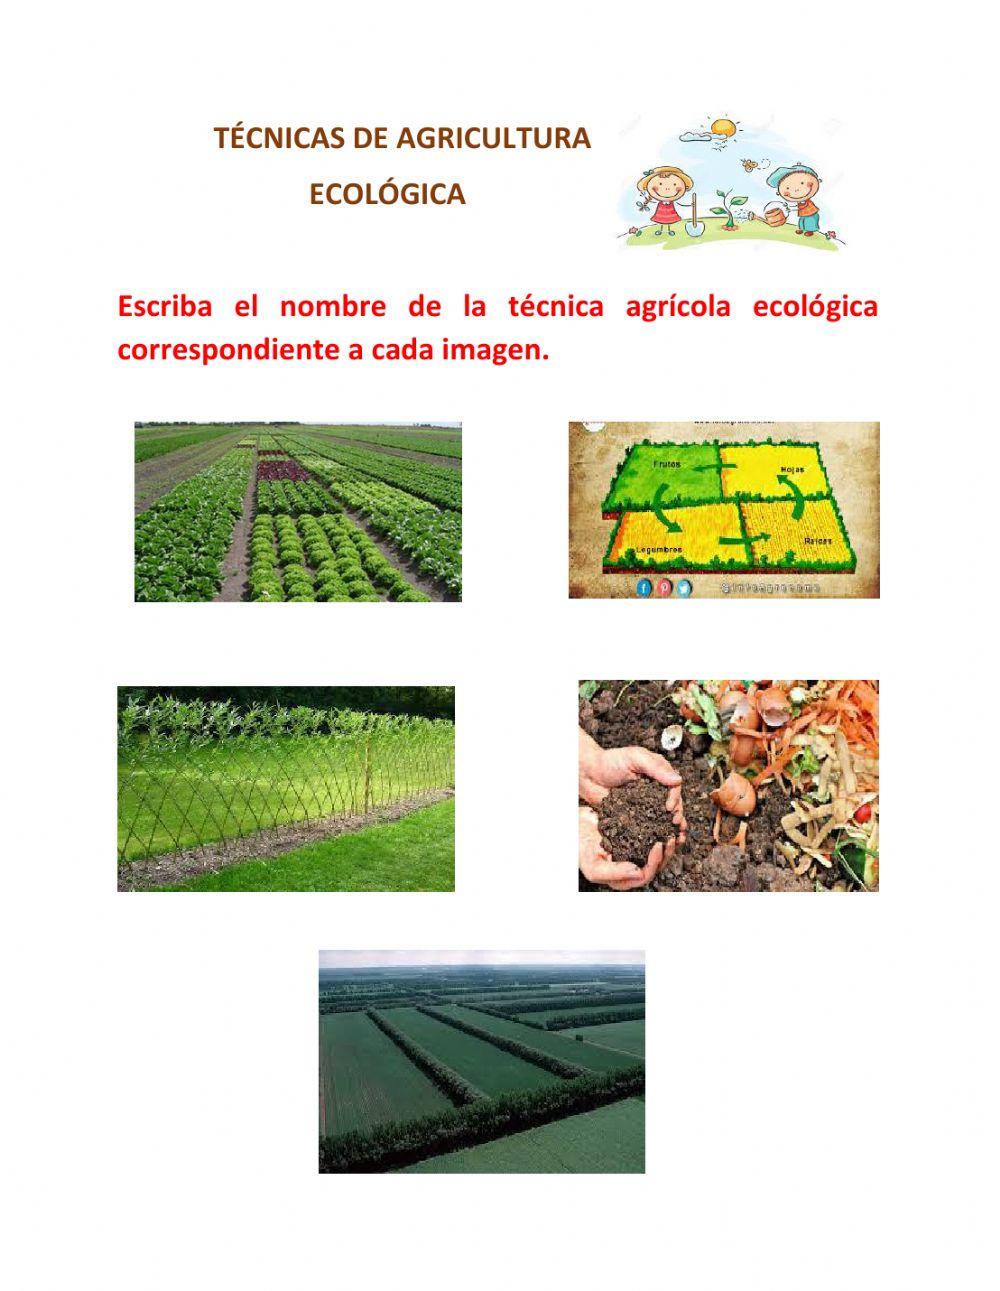 Tecnicas de agricultura ecológica